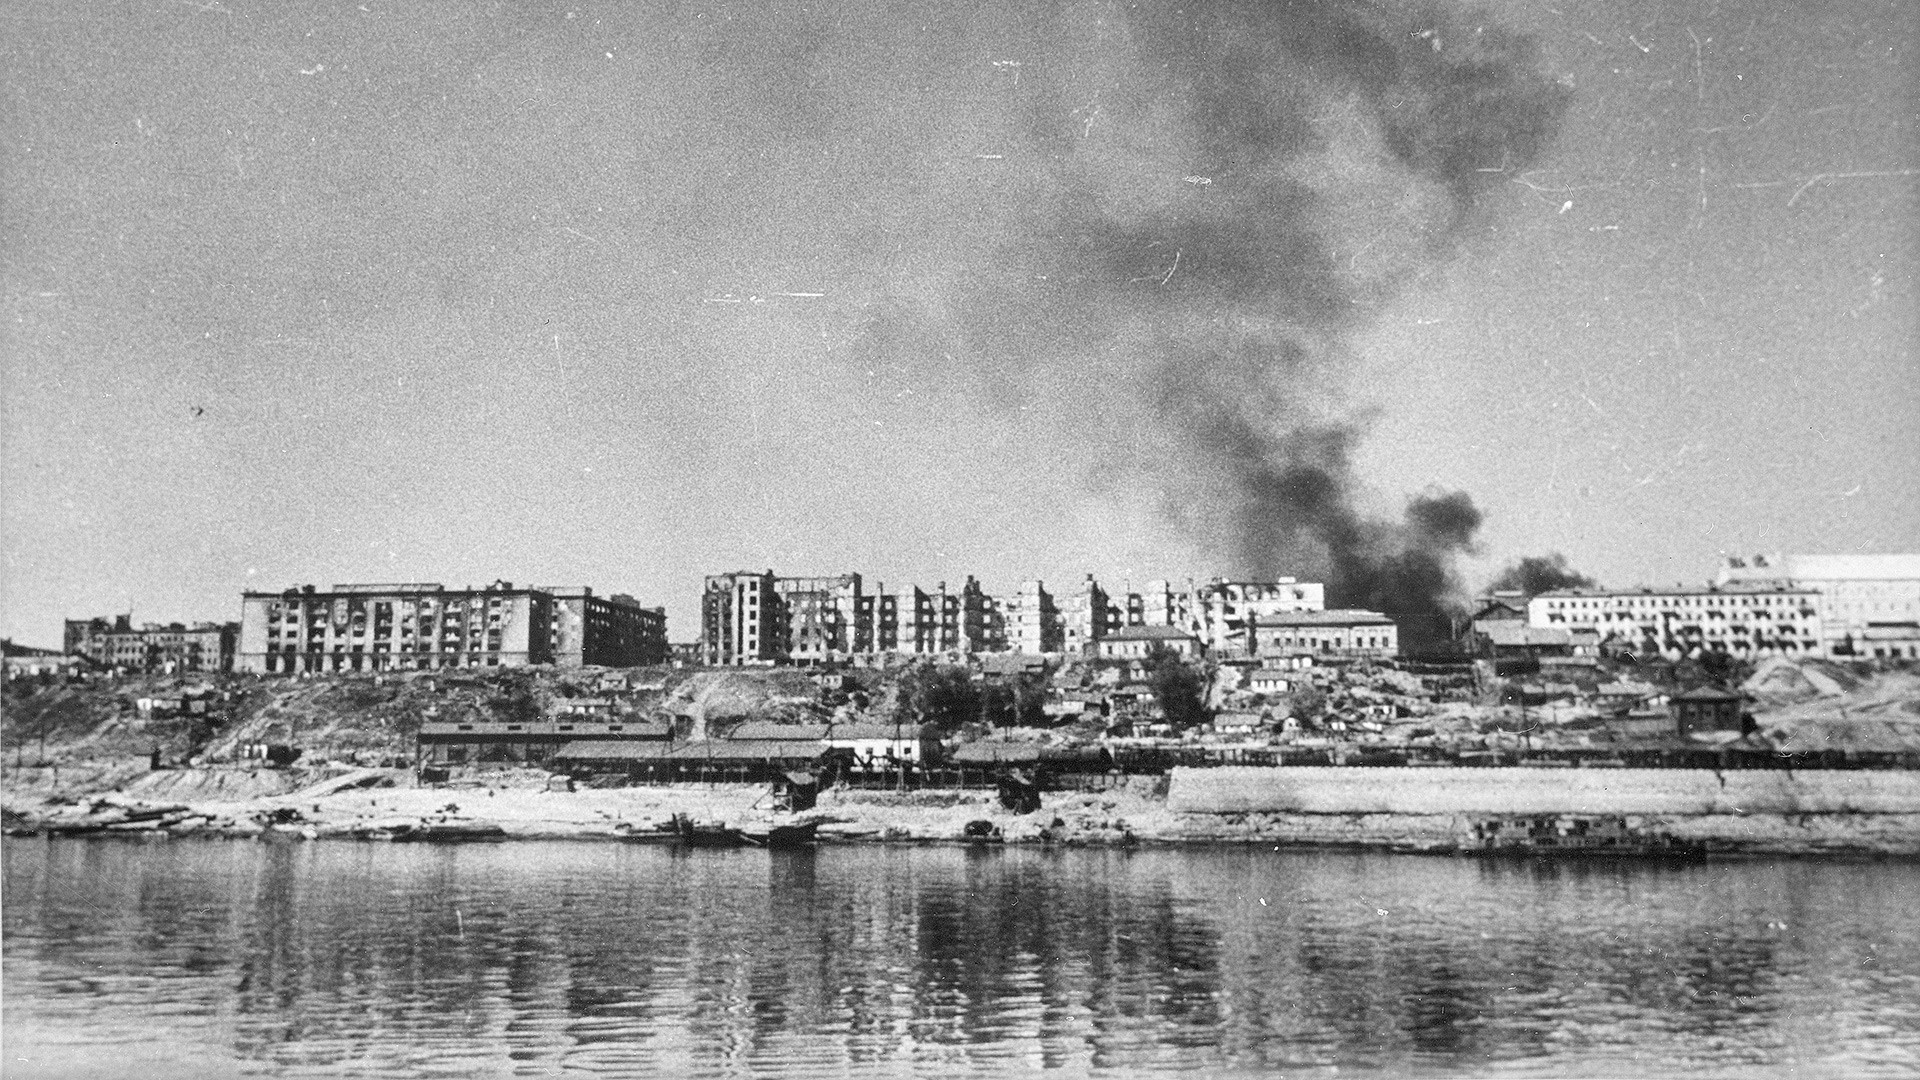 Vue sur la Volga et la ville de Stalingrad (aujourd'hui Volgograd), détruite par les nazis, 1942

